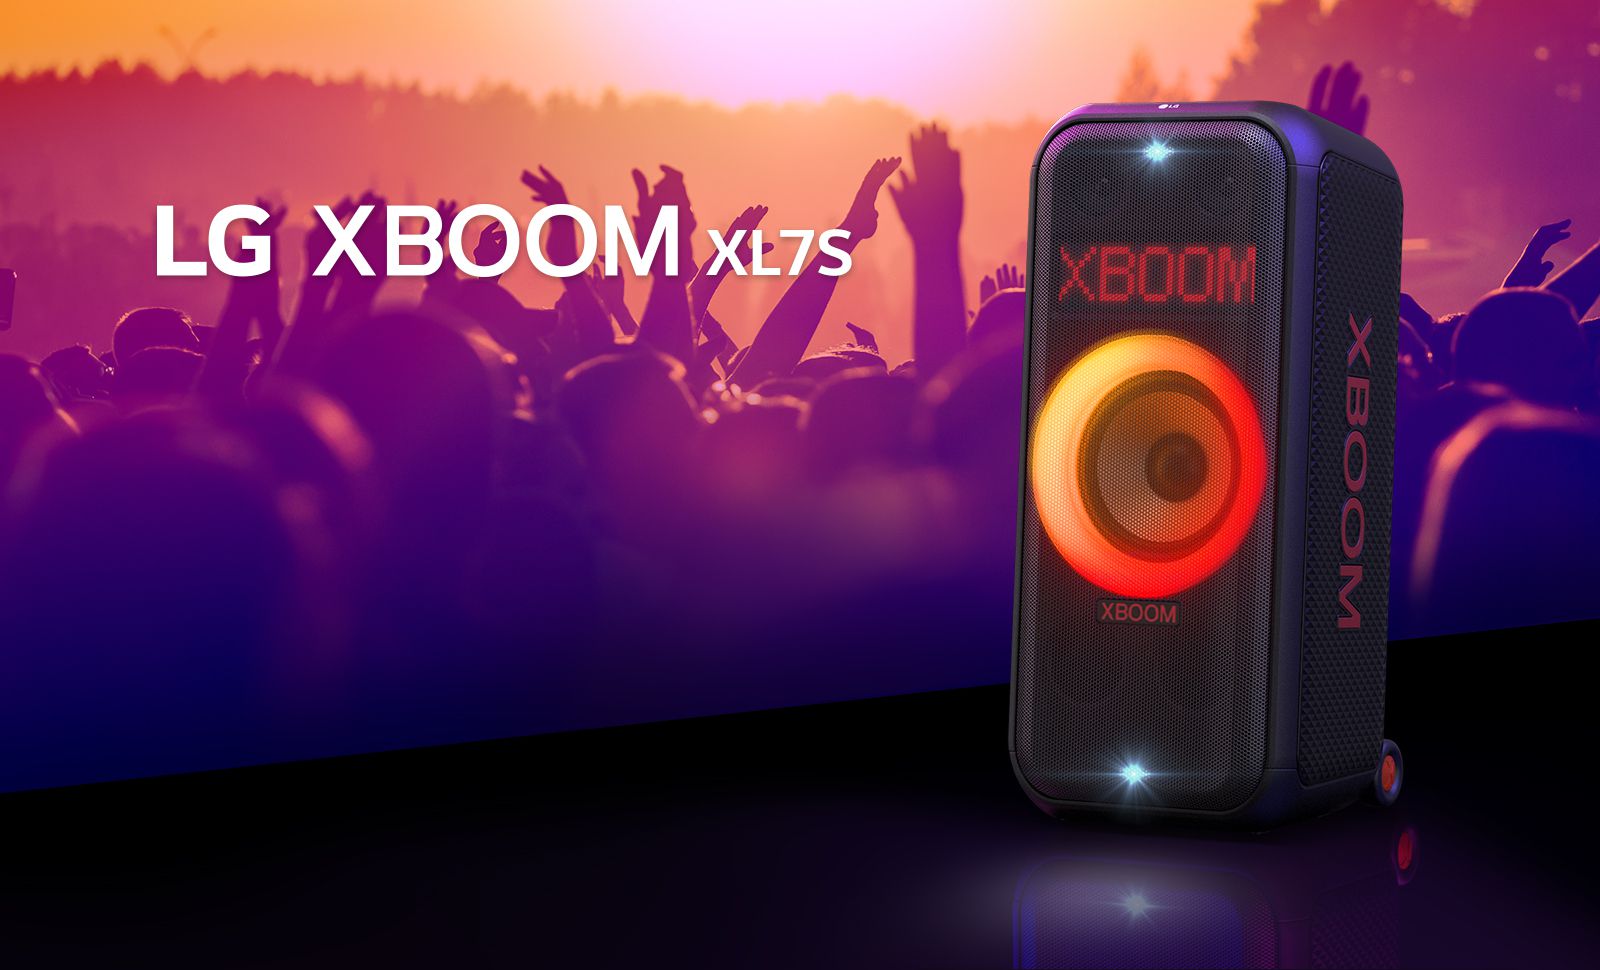 LG XBOOM XL7S на сцене с включенной красно-оранжевой градиентной подсветкой. За сценой люди наслаждаются музыкой.